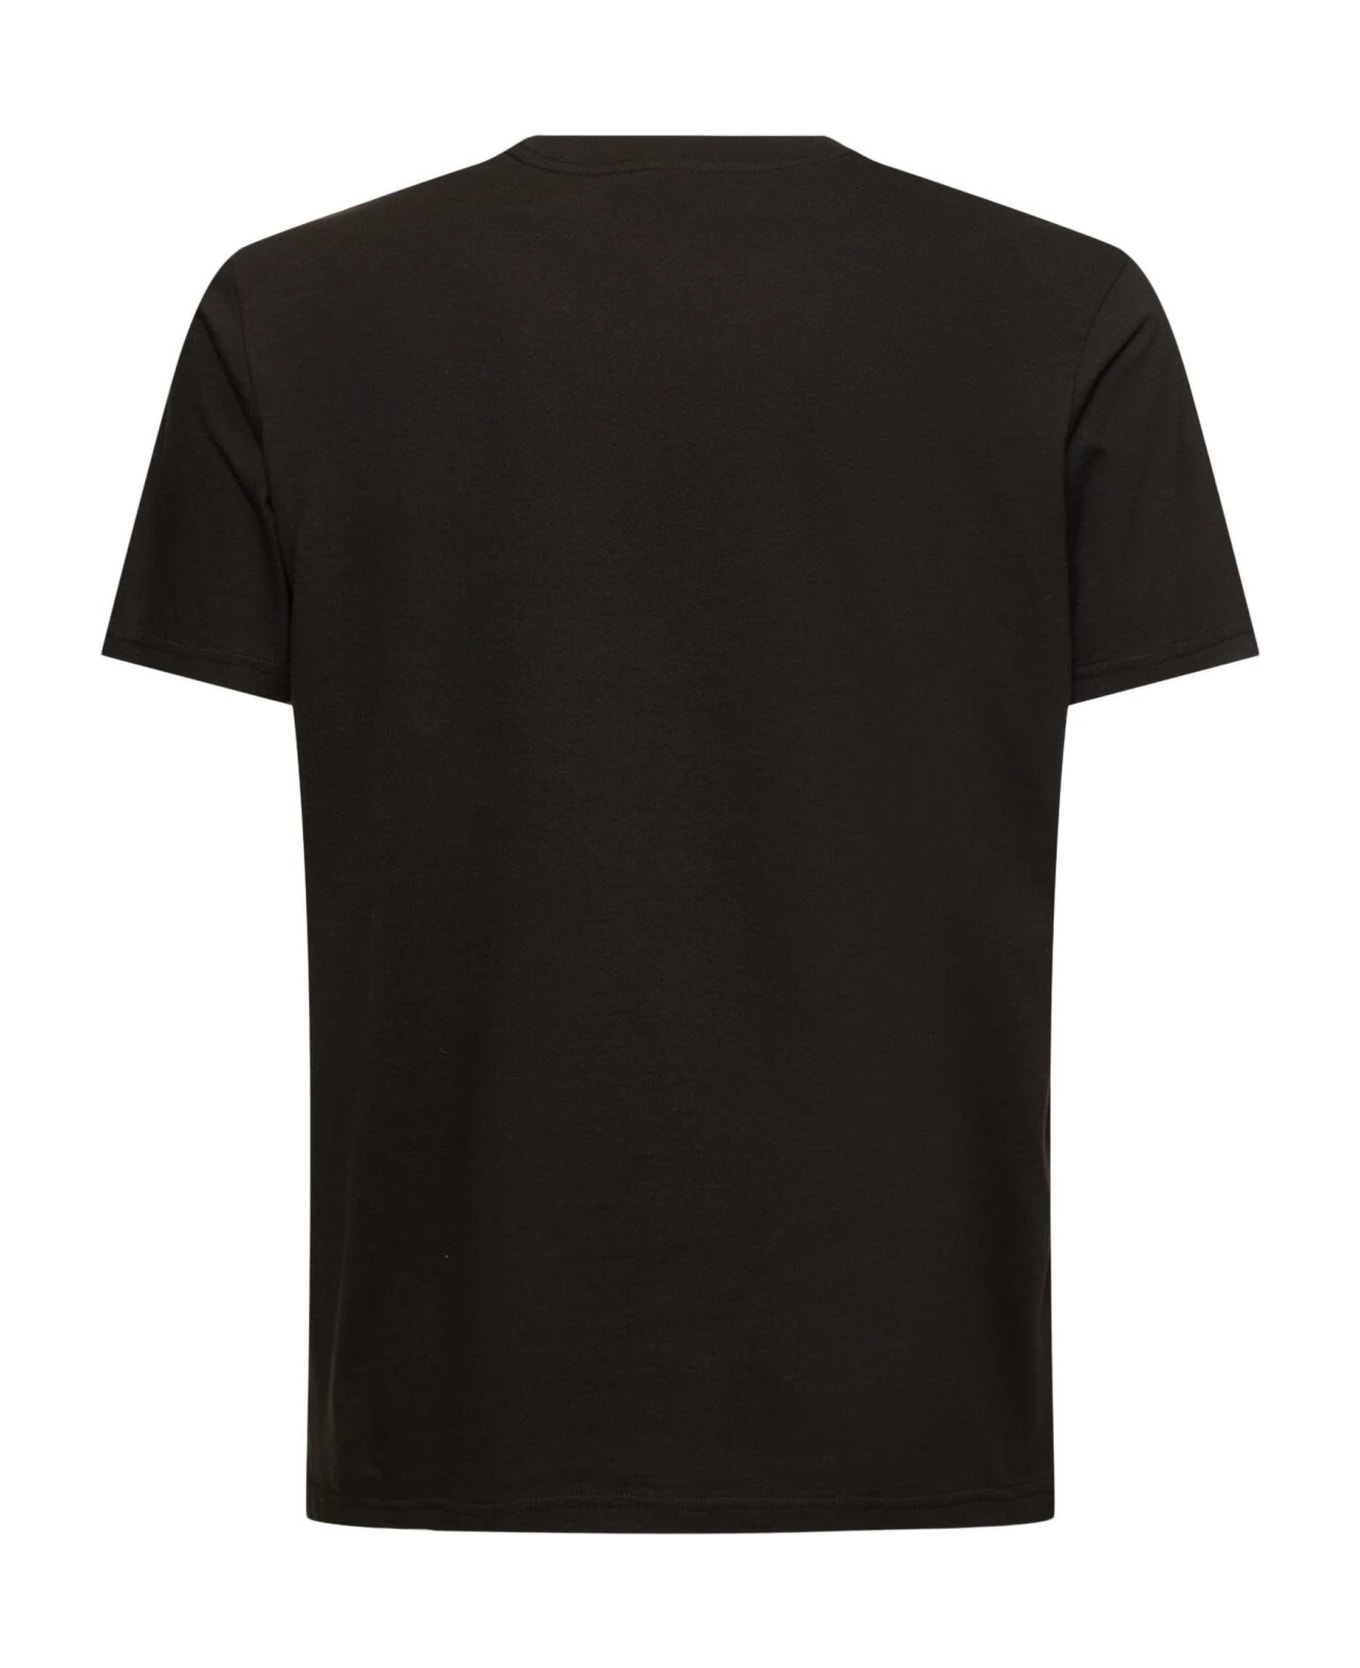 Kenzo T-shirts And Polos Black - Black シャツ